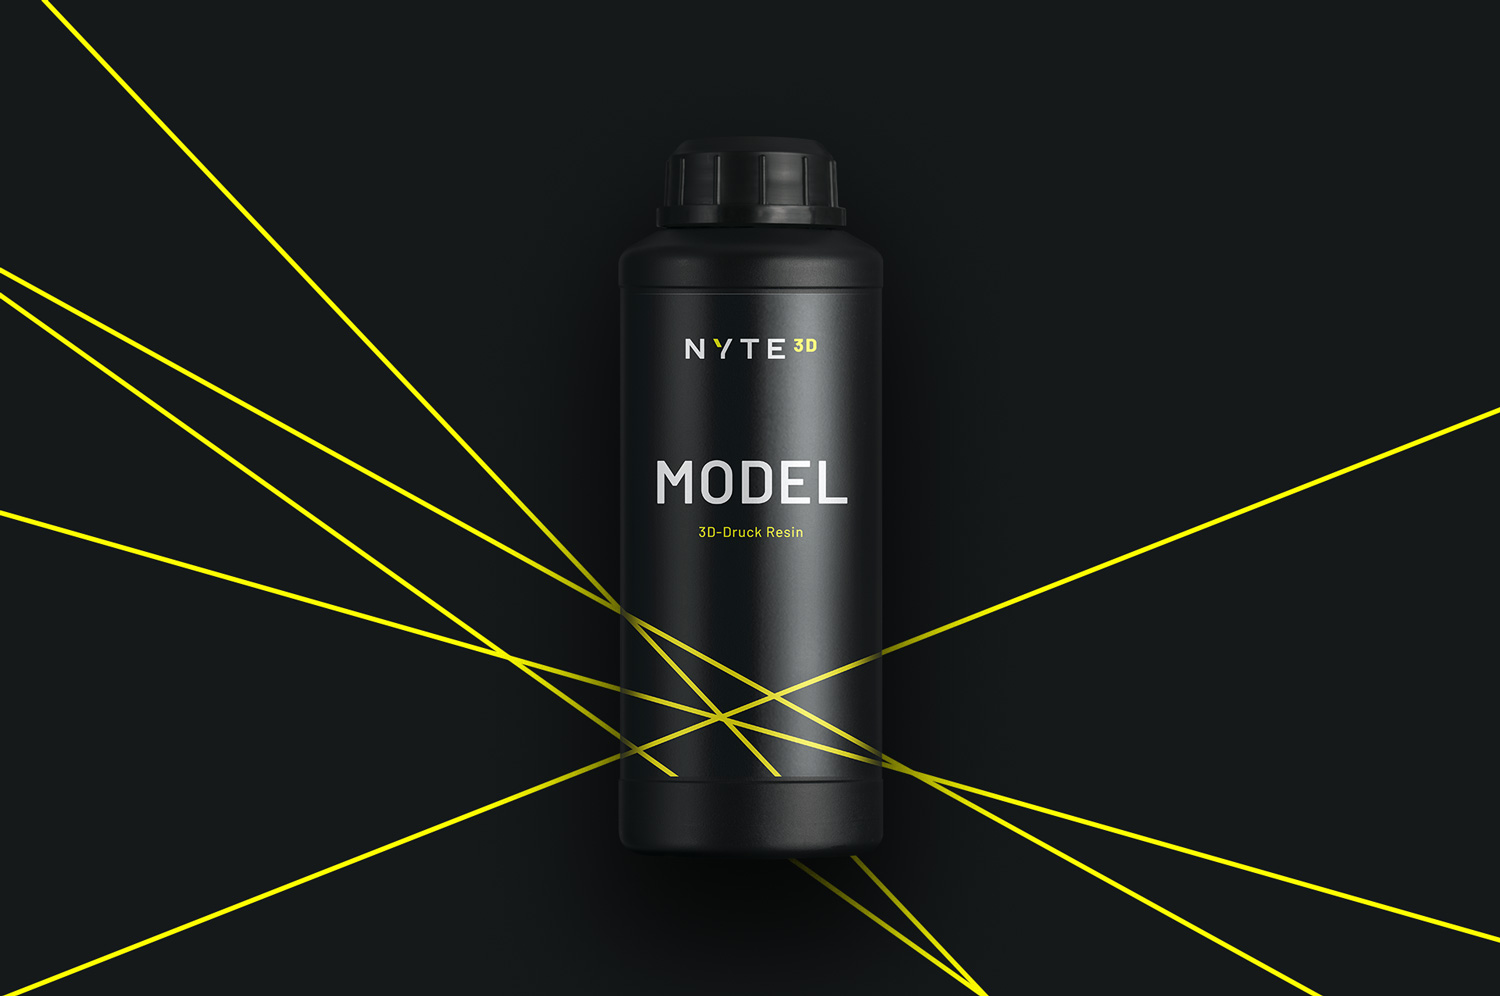 Flaschendesign für NYTE3D Model